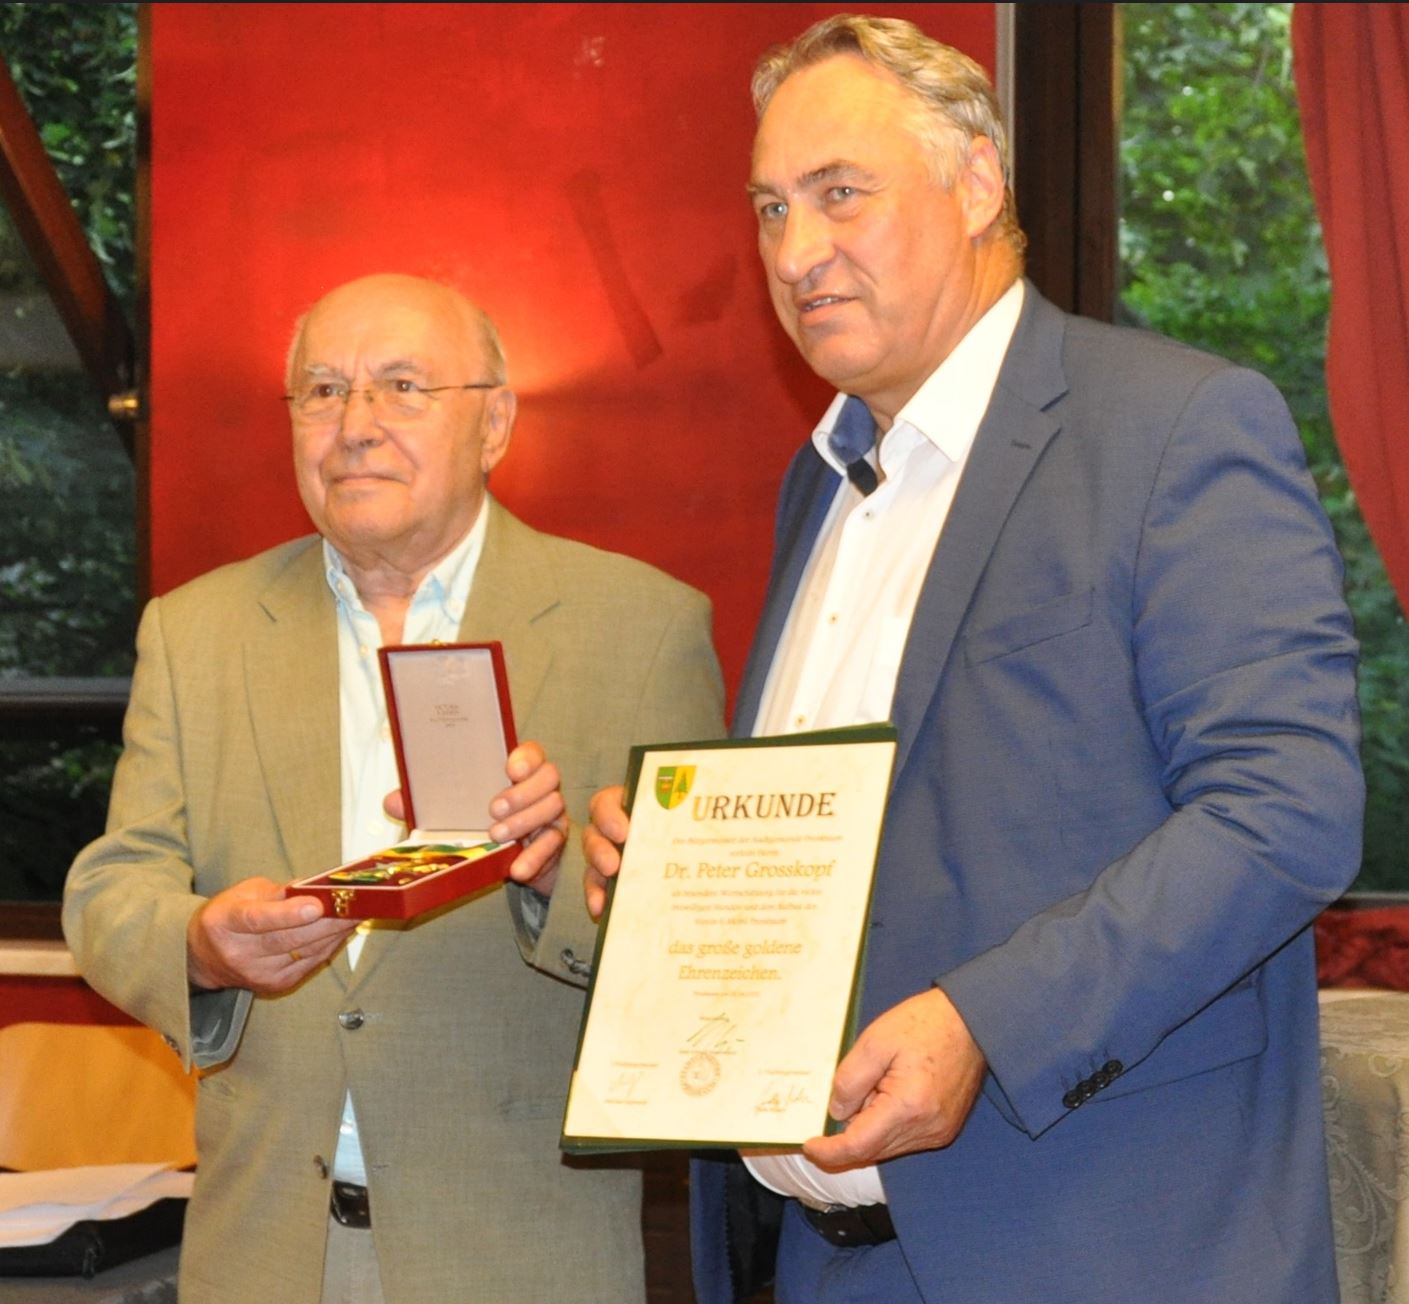 Gemeinderat Dr. Peter Großkopf erhielt das große Goldene Ehrenzeichen